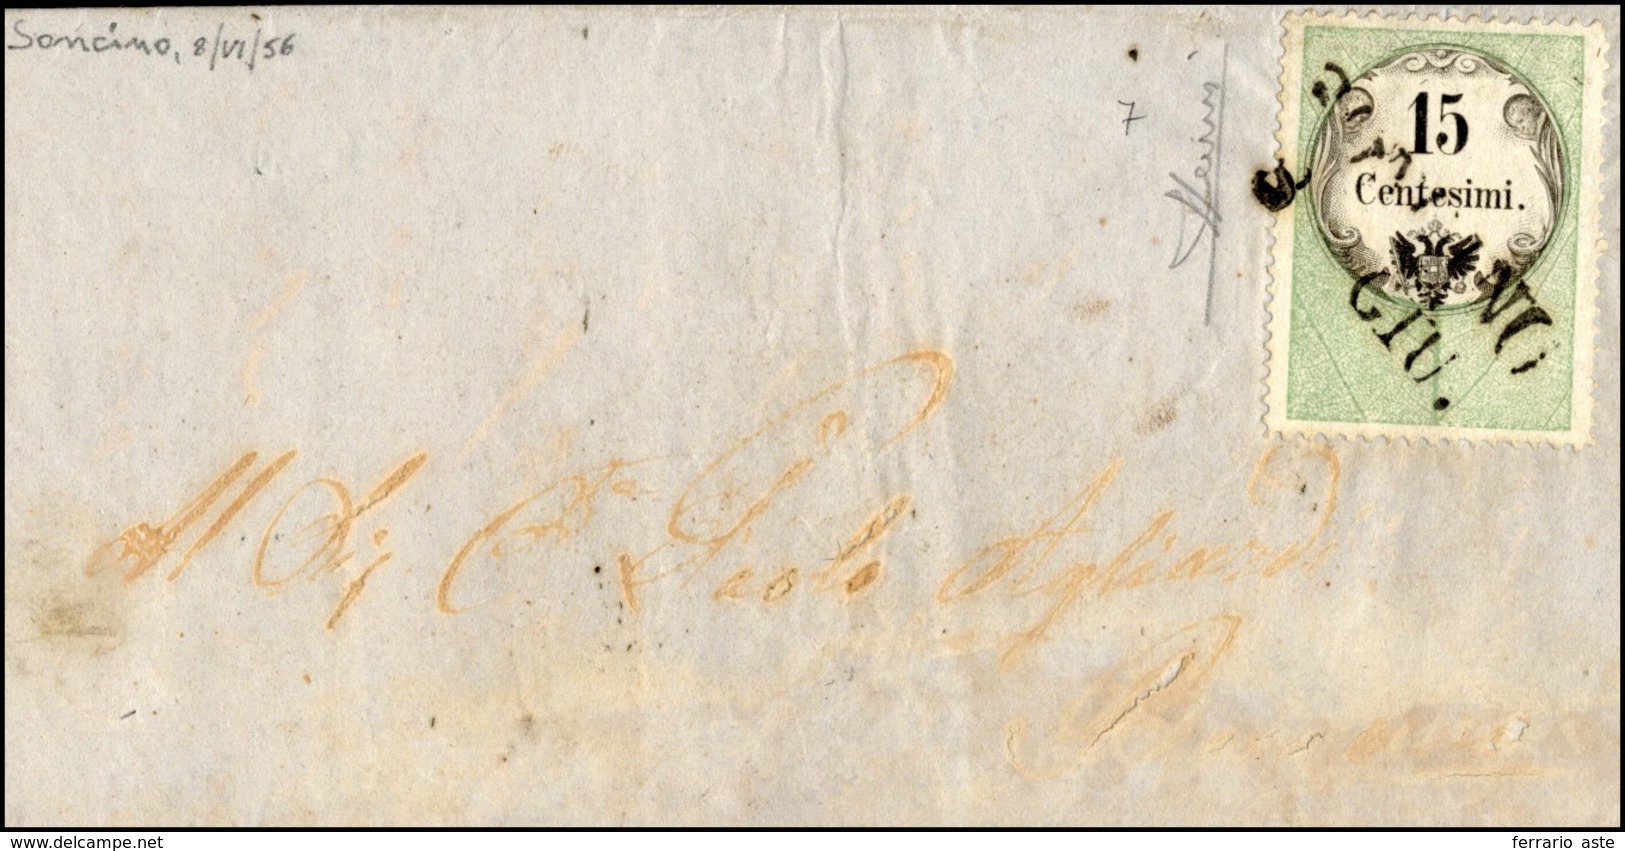 141 1856 - 15 Cent., Marca Da Bollo Calcografica (7), Perfetta, Su Lettera Da Soncino 8/6/1856 (punti 9)... - Lombardo-Venetien